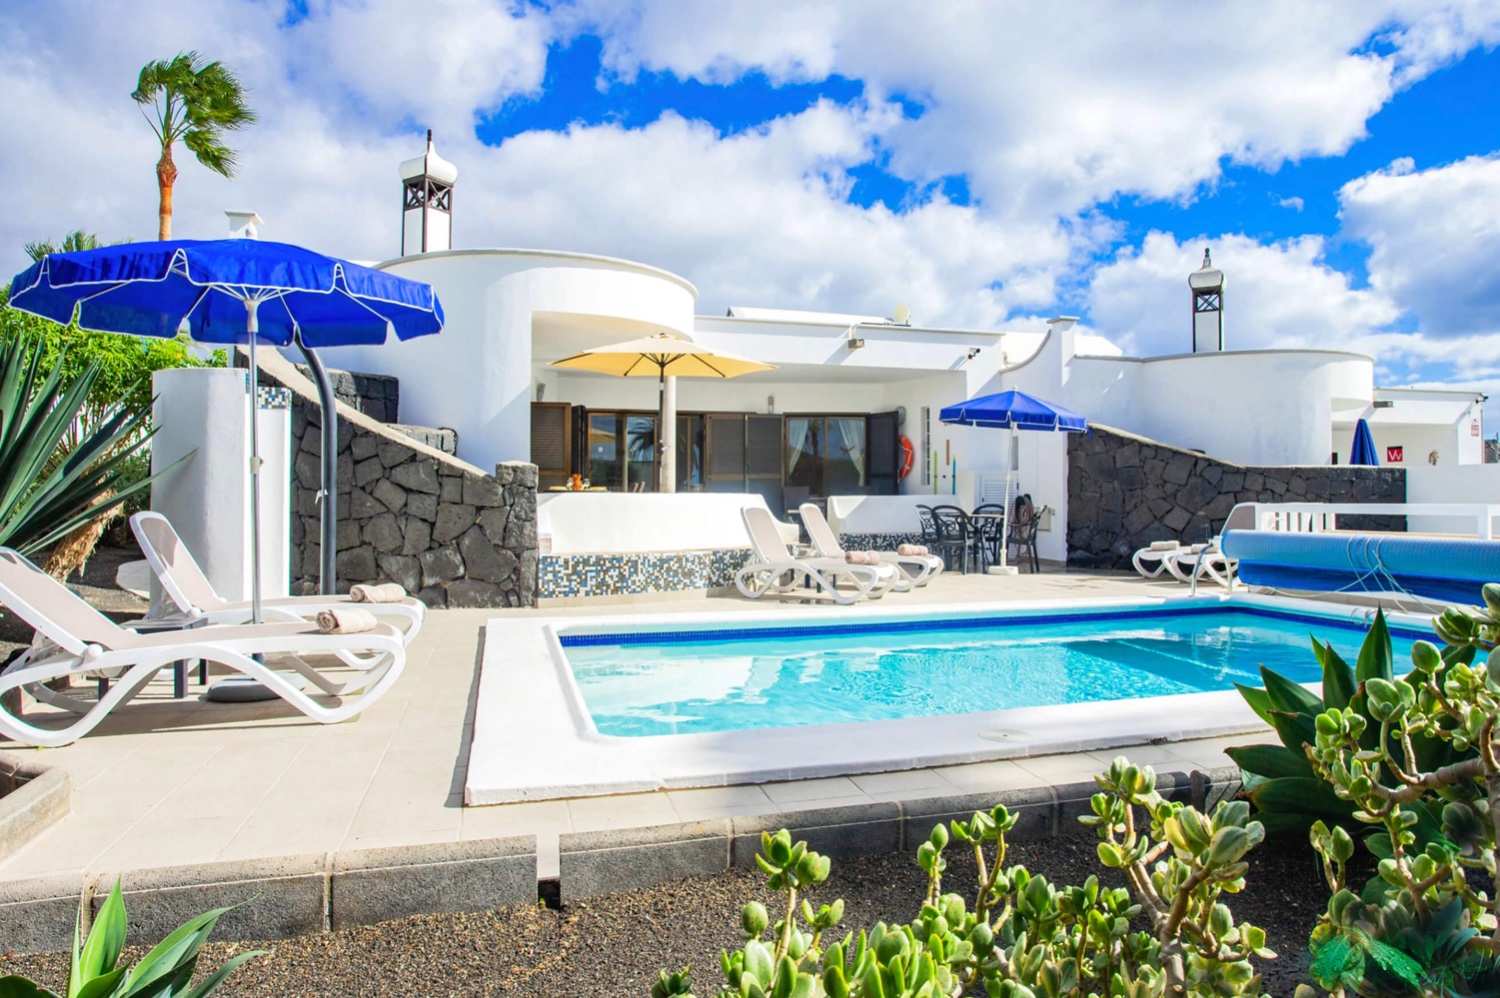 Villa mit 3 Schlafzimmer und beheizbarem Privatpool in einer schönen Wohnanlage in Playa Blanca im Süden der Insel